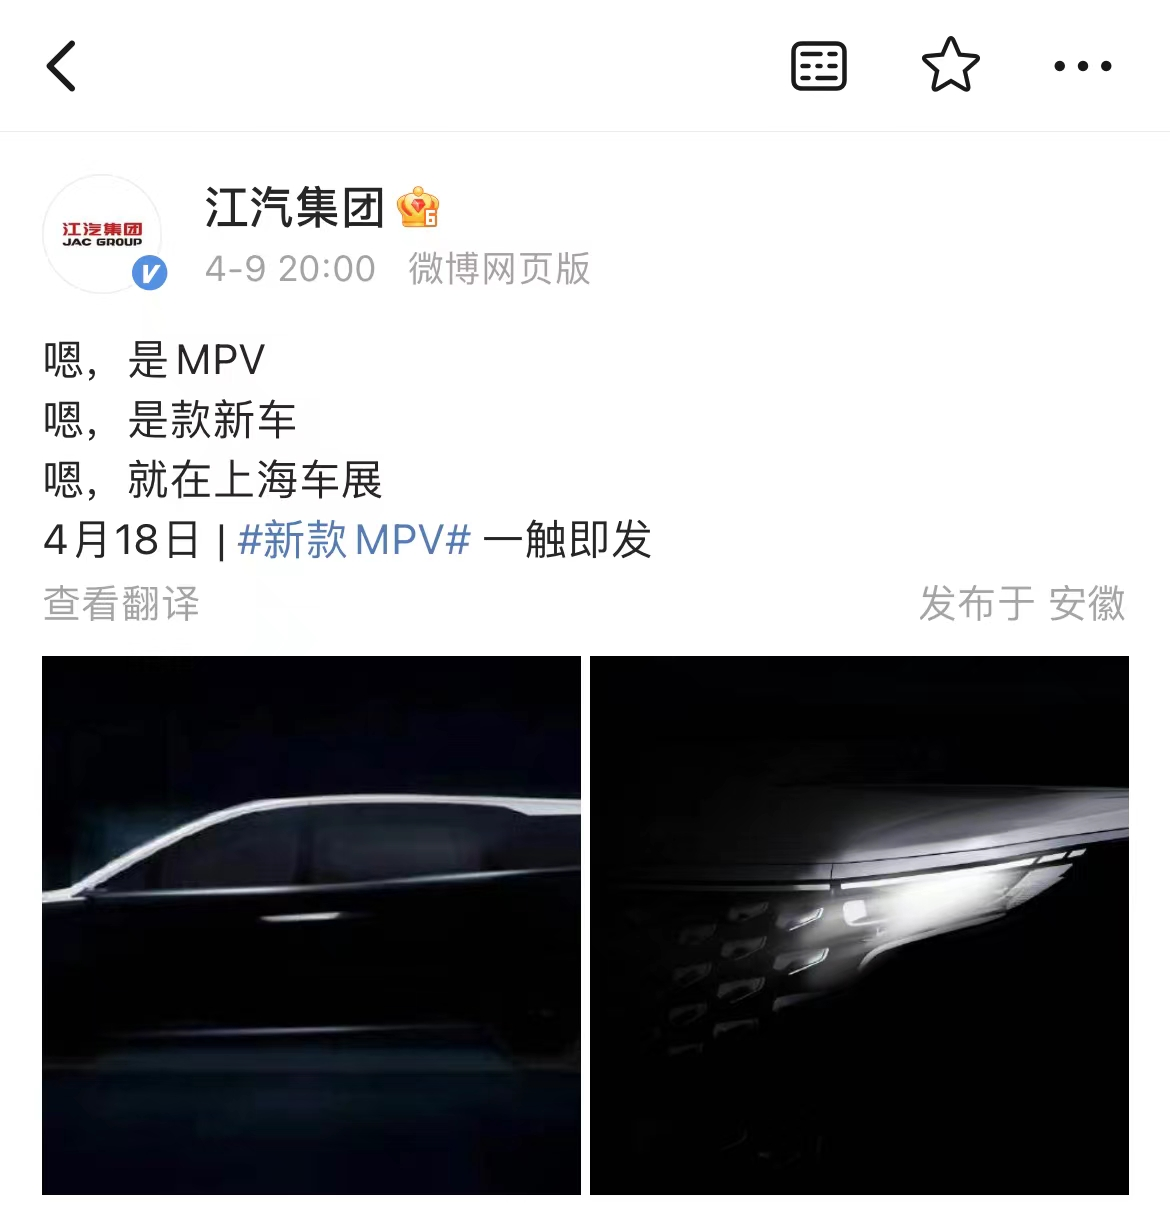 近日，江汽集团在官方微博公布一组新车局部图，为旗下江淮瑞风的一款全新MPV，并预告上海车展揭晓。